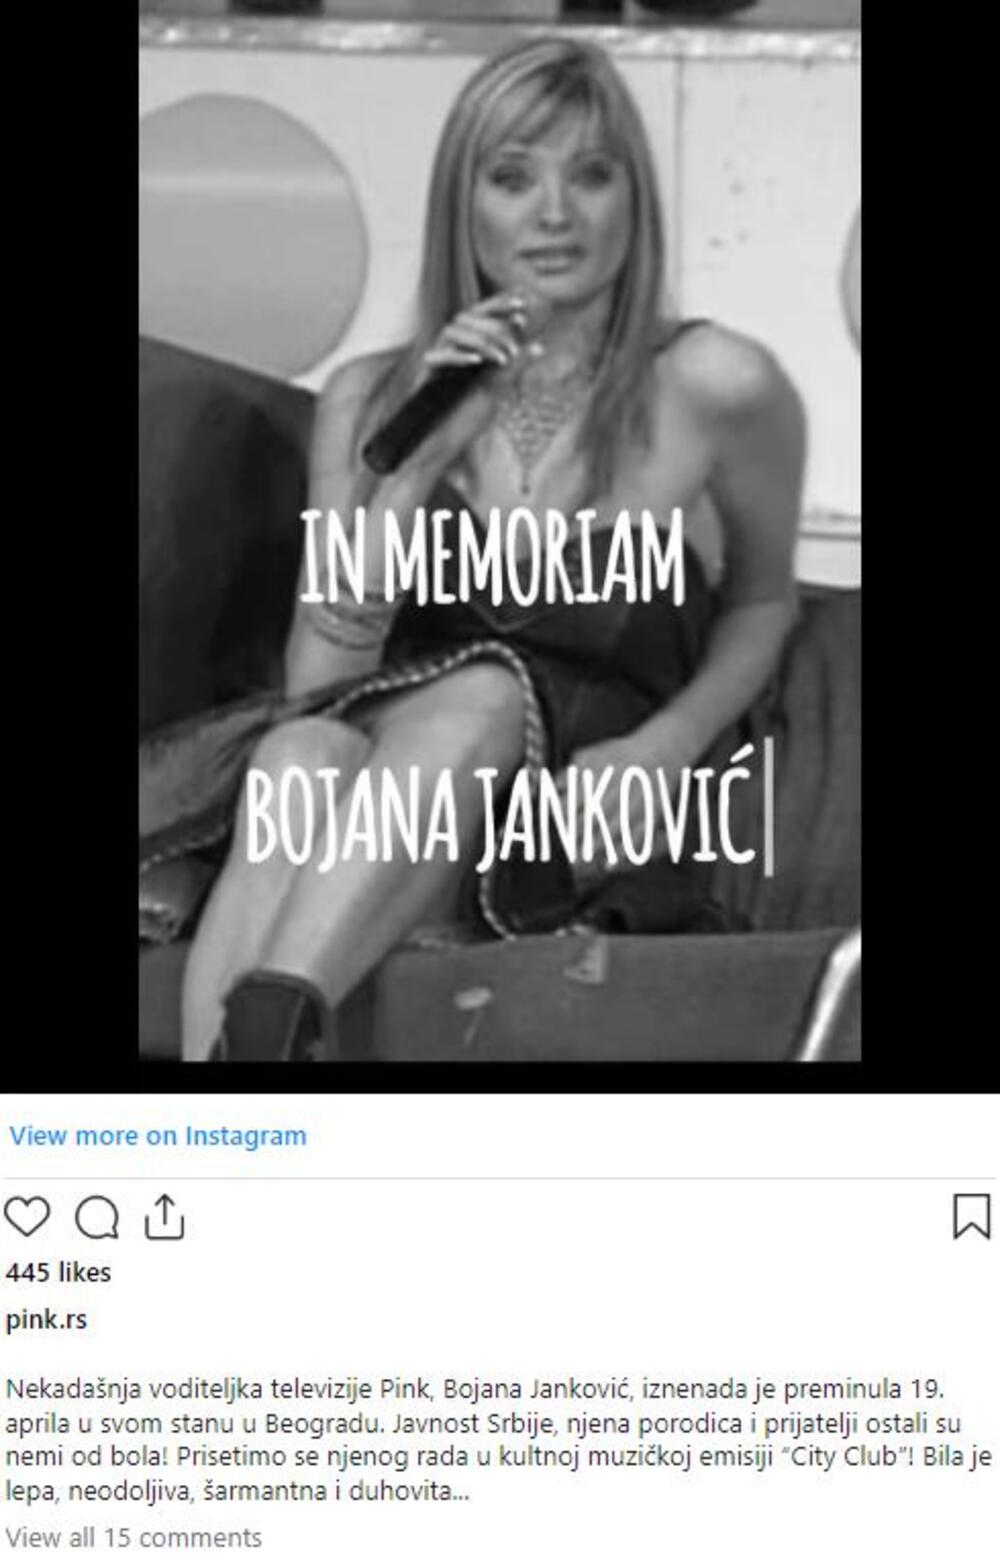 Bojana Janković